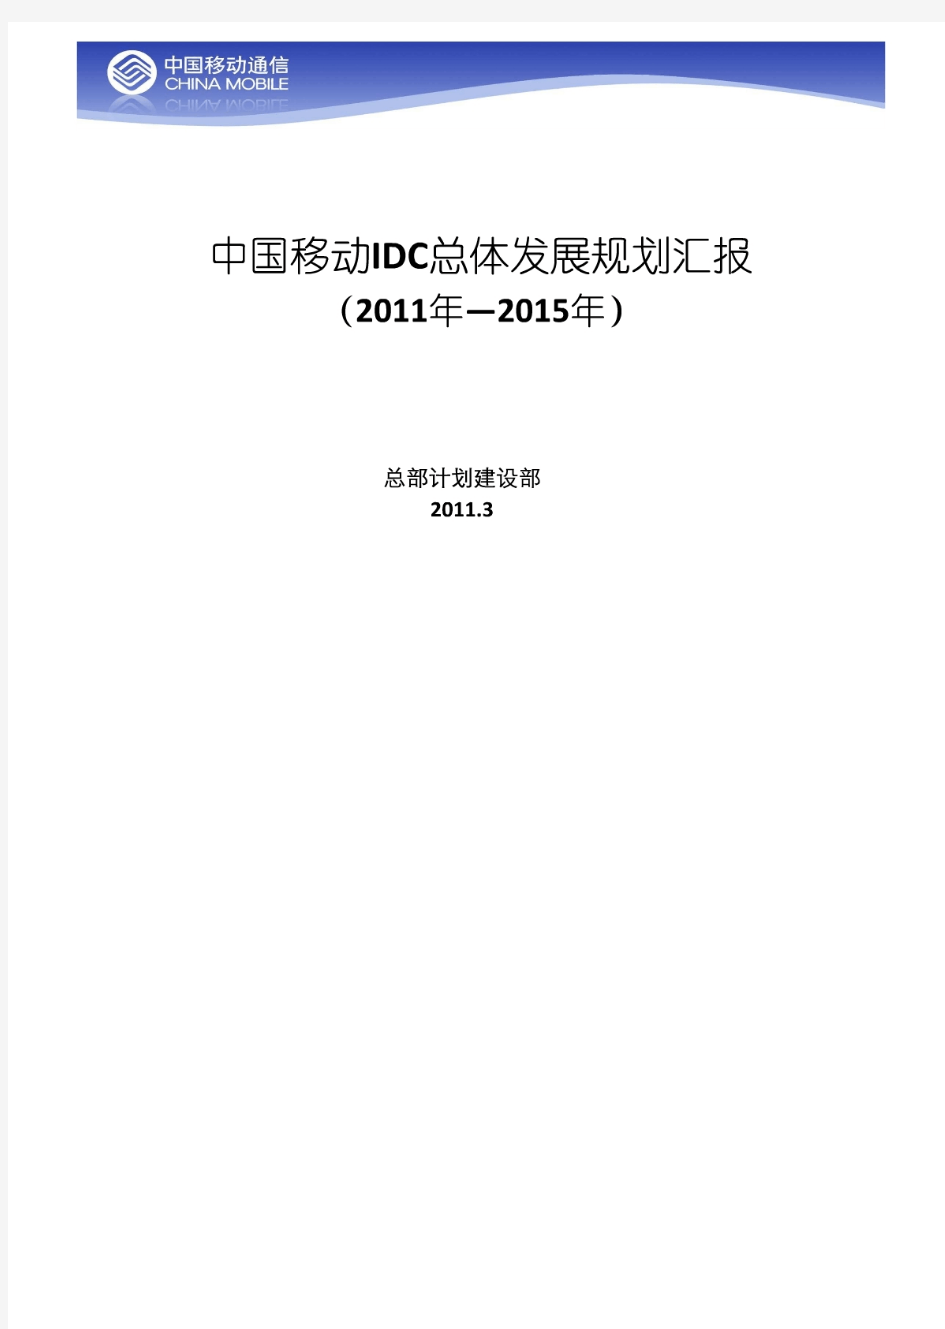 中国移动IDC总体发展规划思路(计划部)